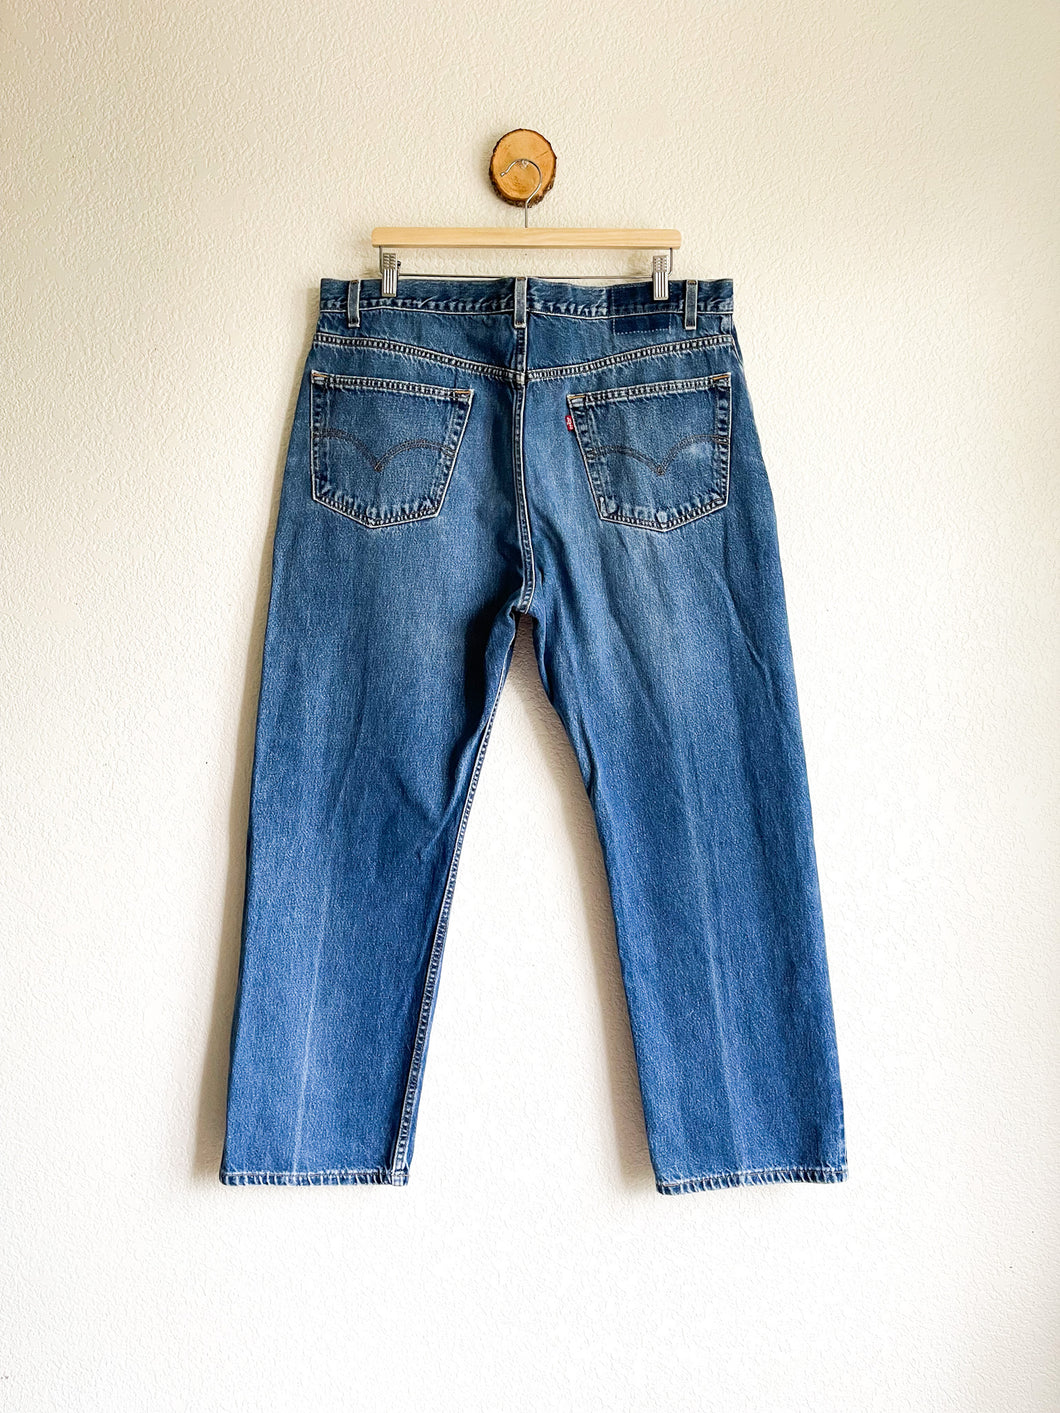 Vintage Levi's Jeans - 39.5